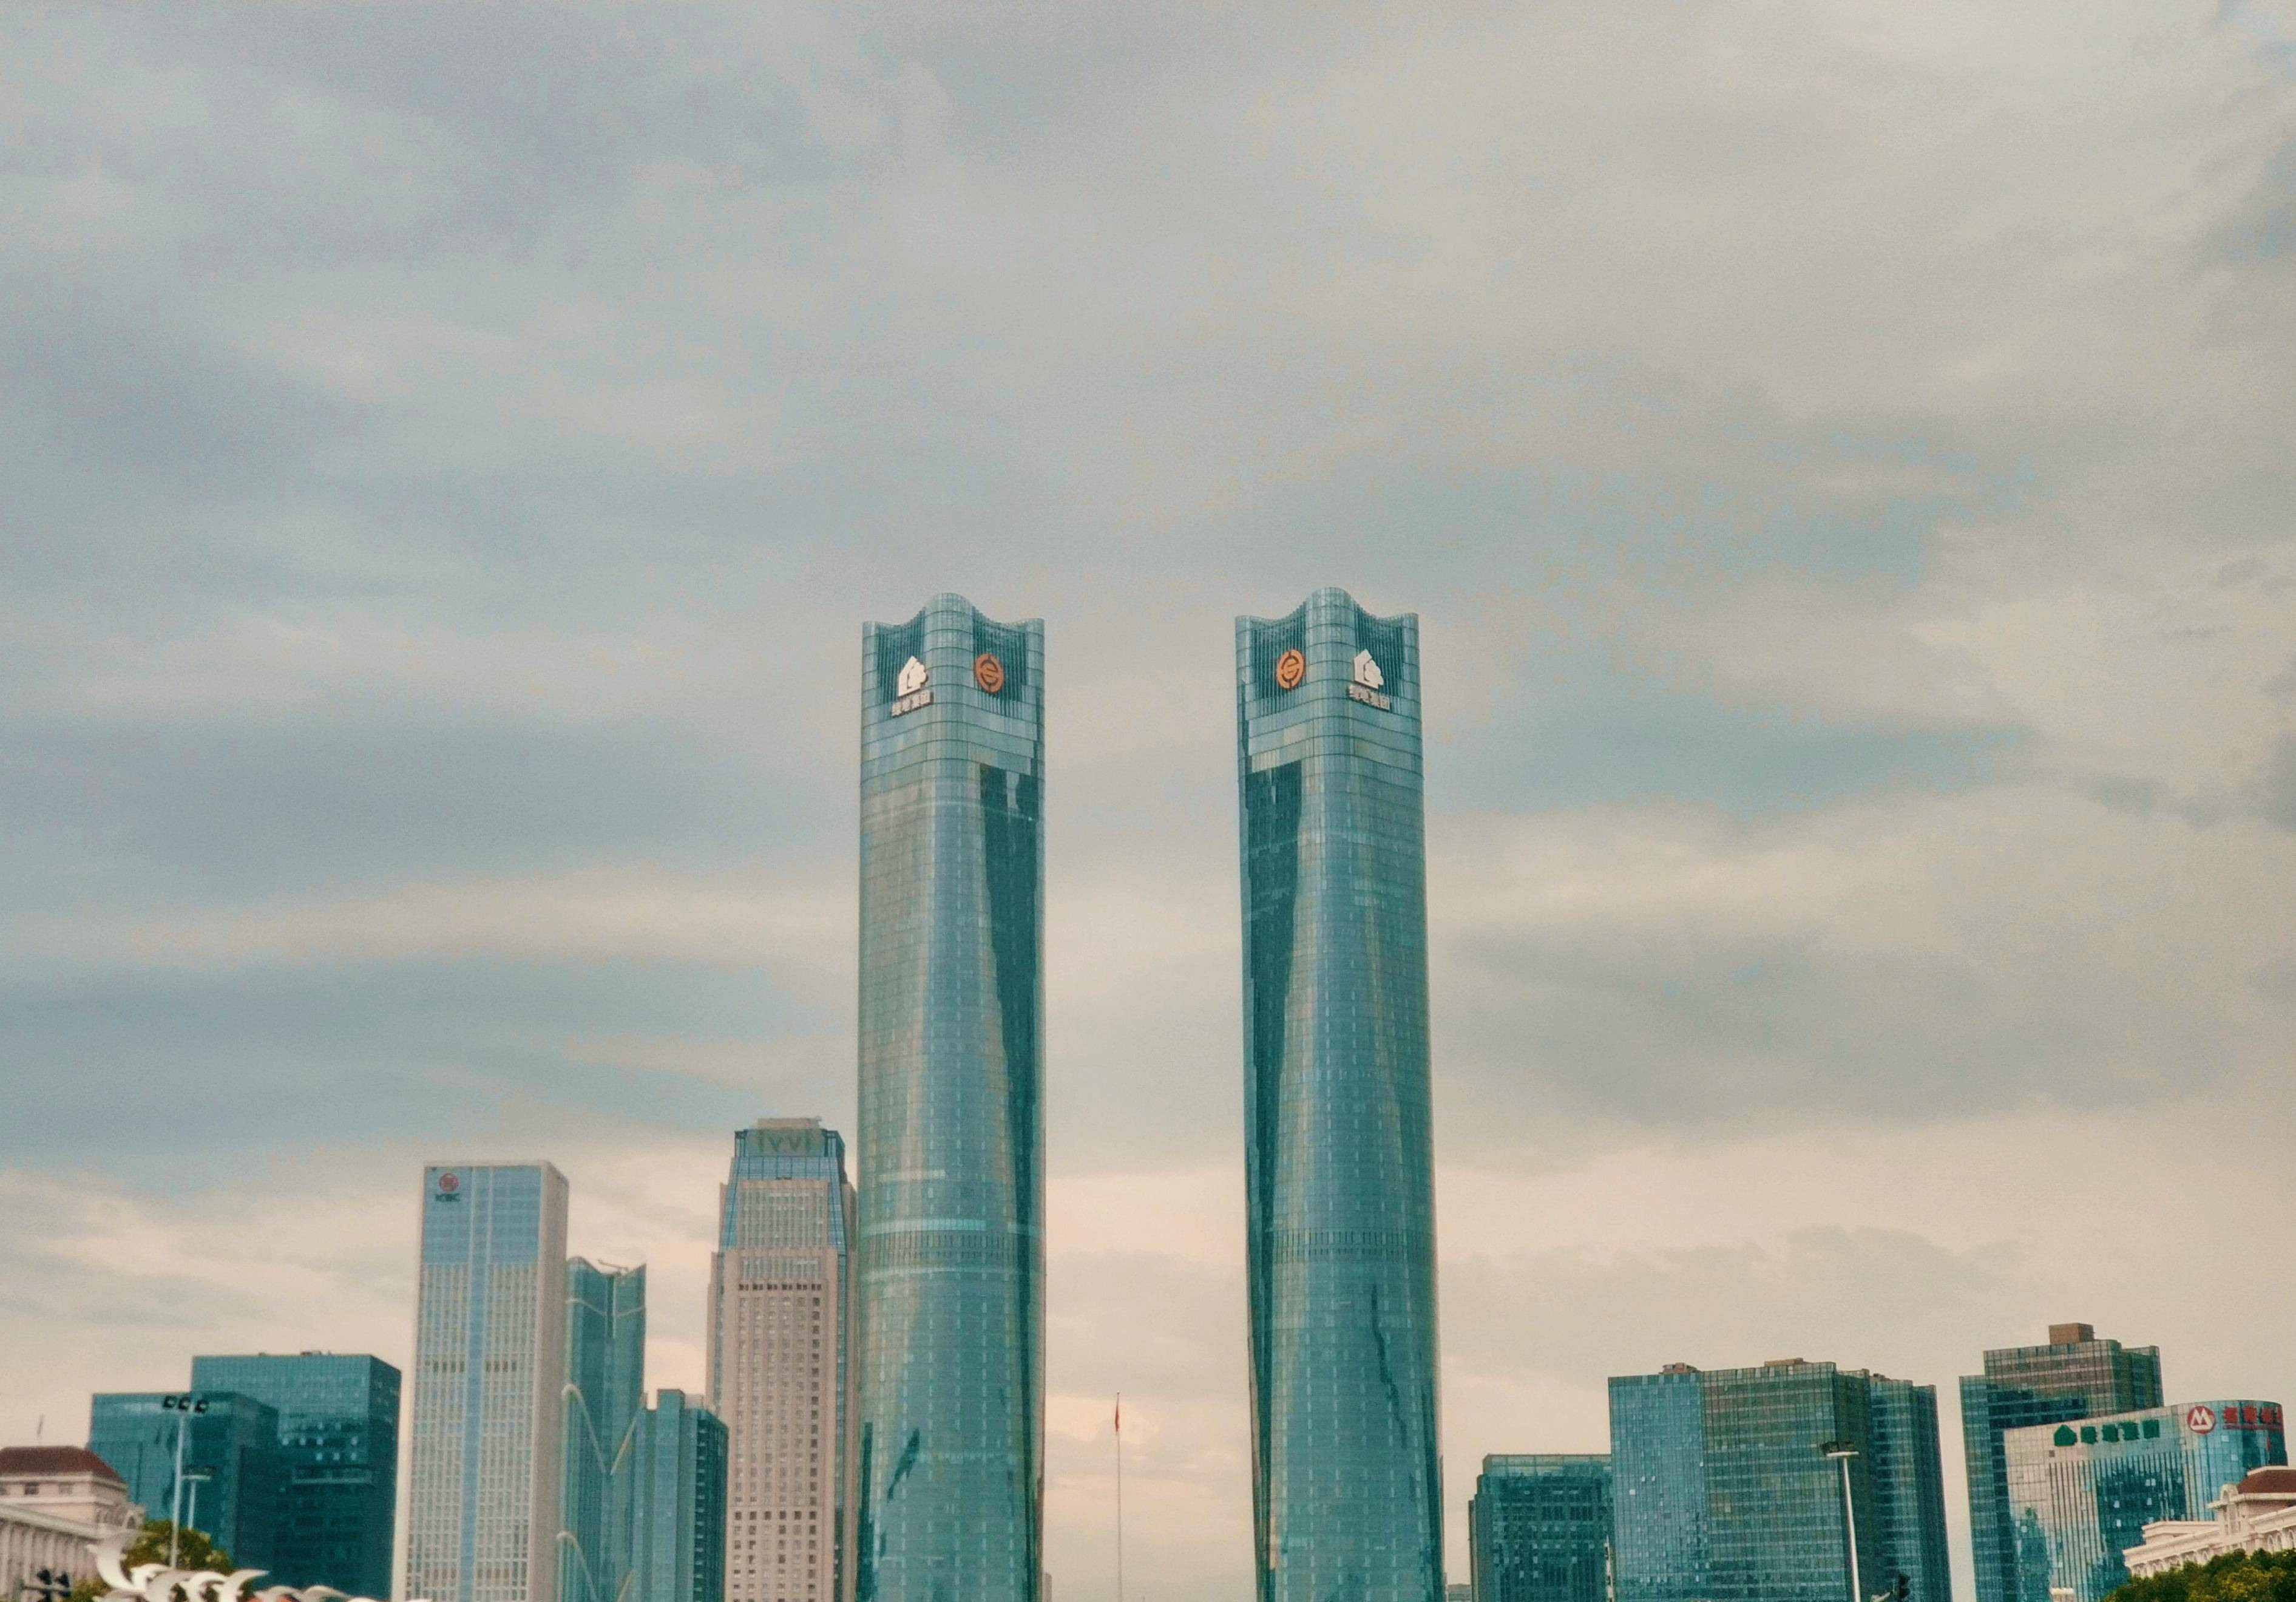 我国最高的双子塔之一,高度均为303米,是江西的代表性建筑之一